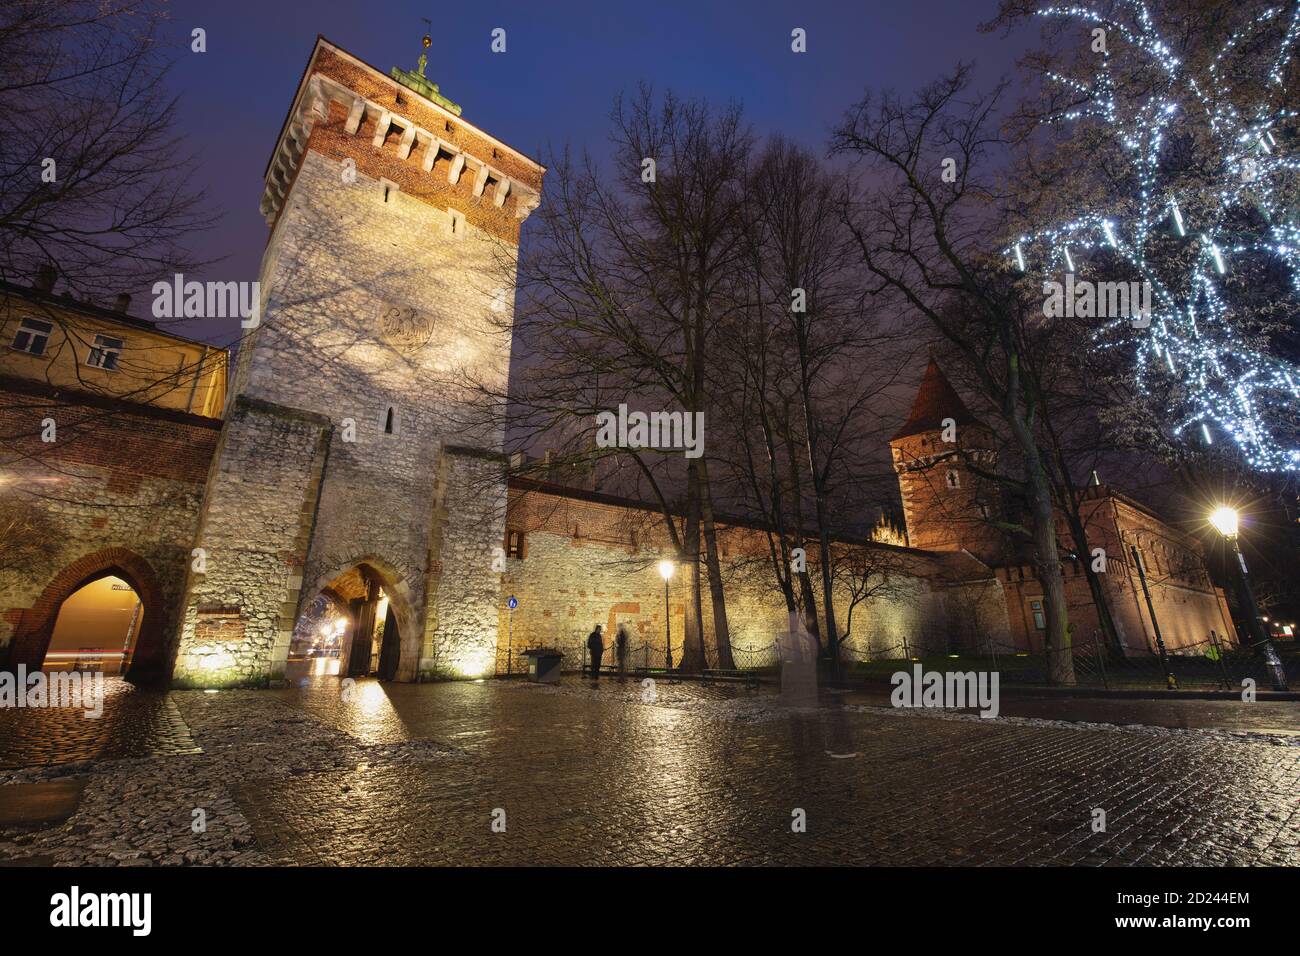 Florianska Gate in Krakow. Krakow, Lesser Poland, Poland. Stock Photo